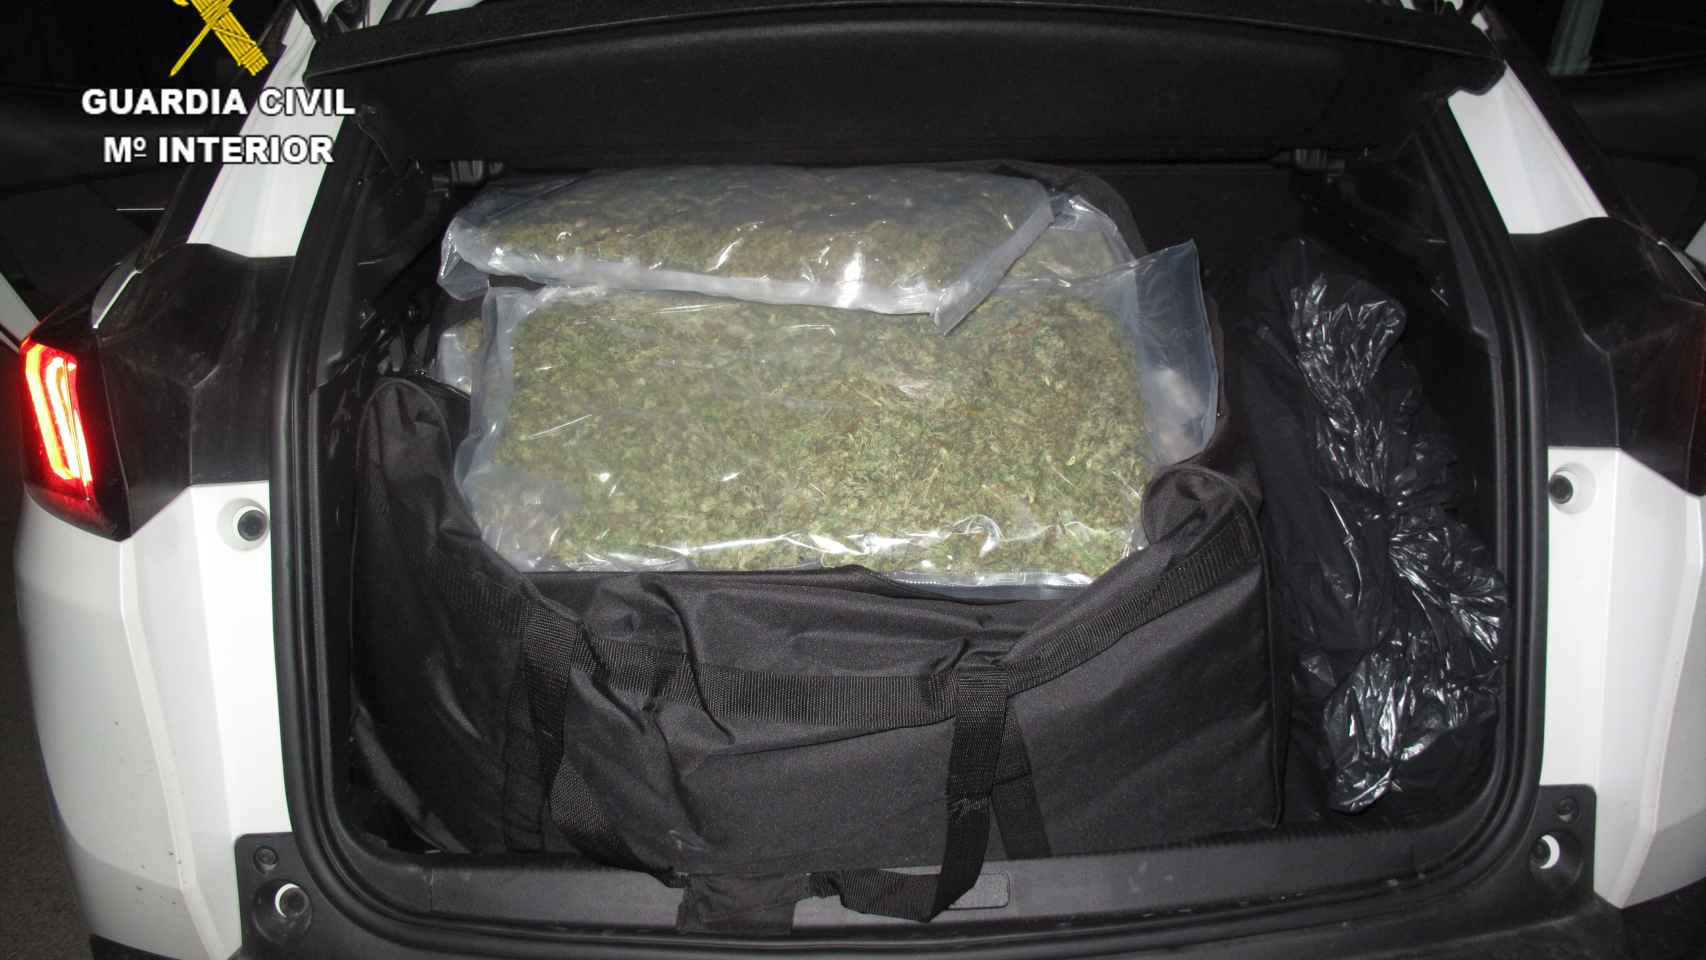 Kenia y Brienne encuentran en Tembleque (Toledo) más de 70 kilos de marihuana oculta